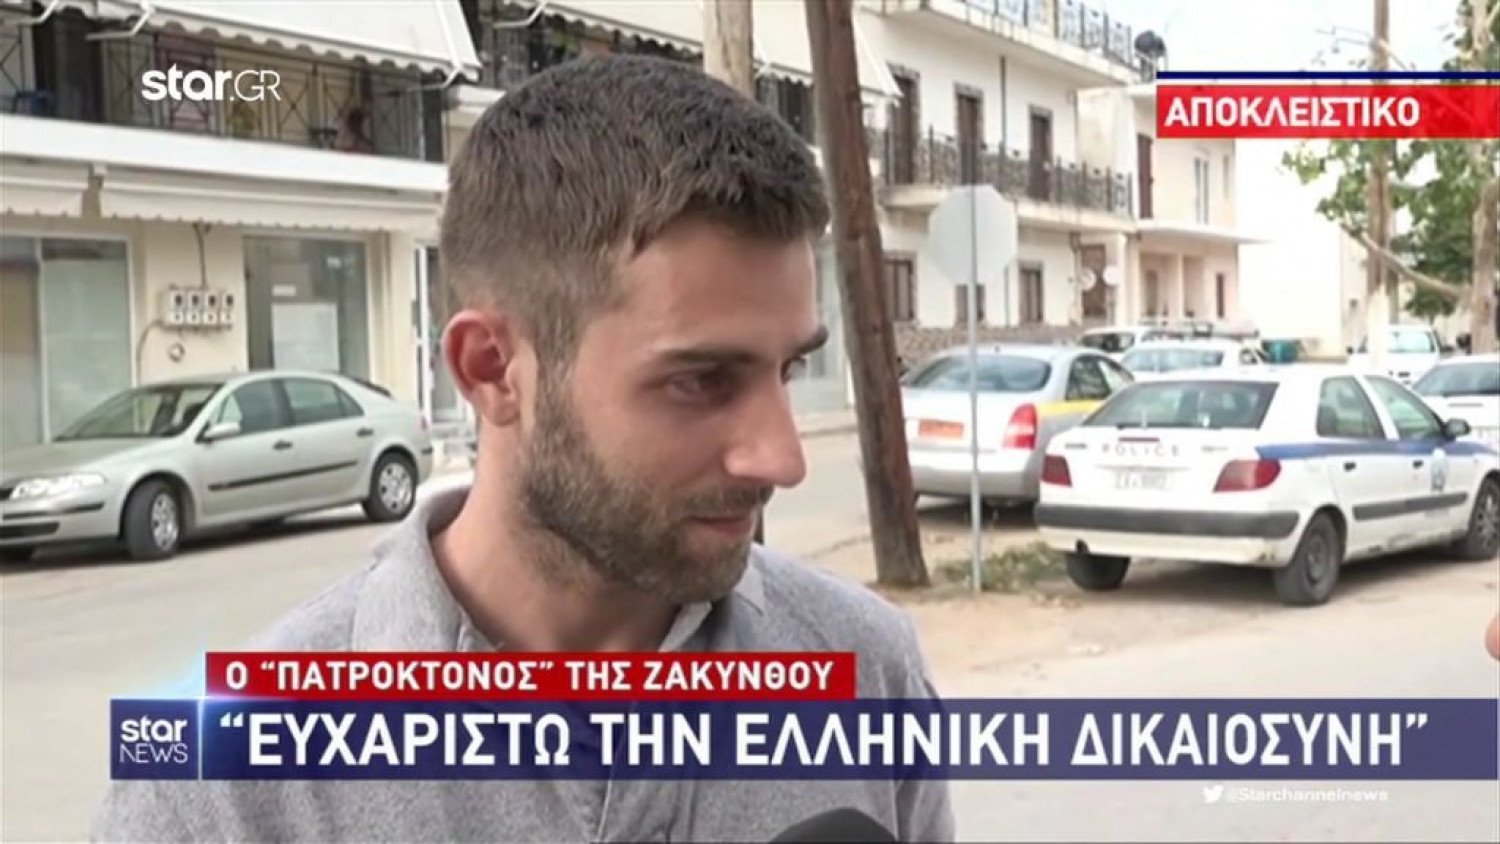 Ζάκυνθος: Αποφυλακίστηκε ο 27χρονος πατροκτόνος – «Δεν ήμουν εγώ, ήταν ο πόνος ενός βασανισμένου παιδιού»